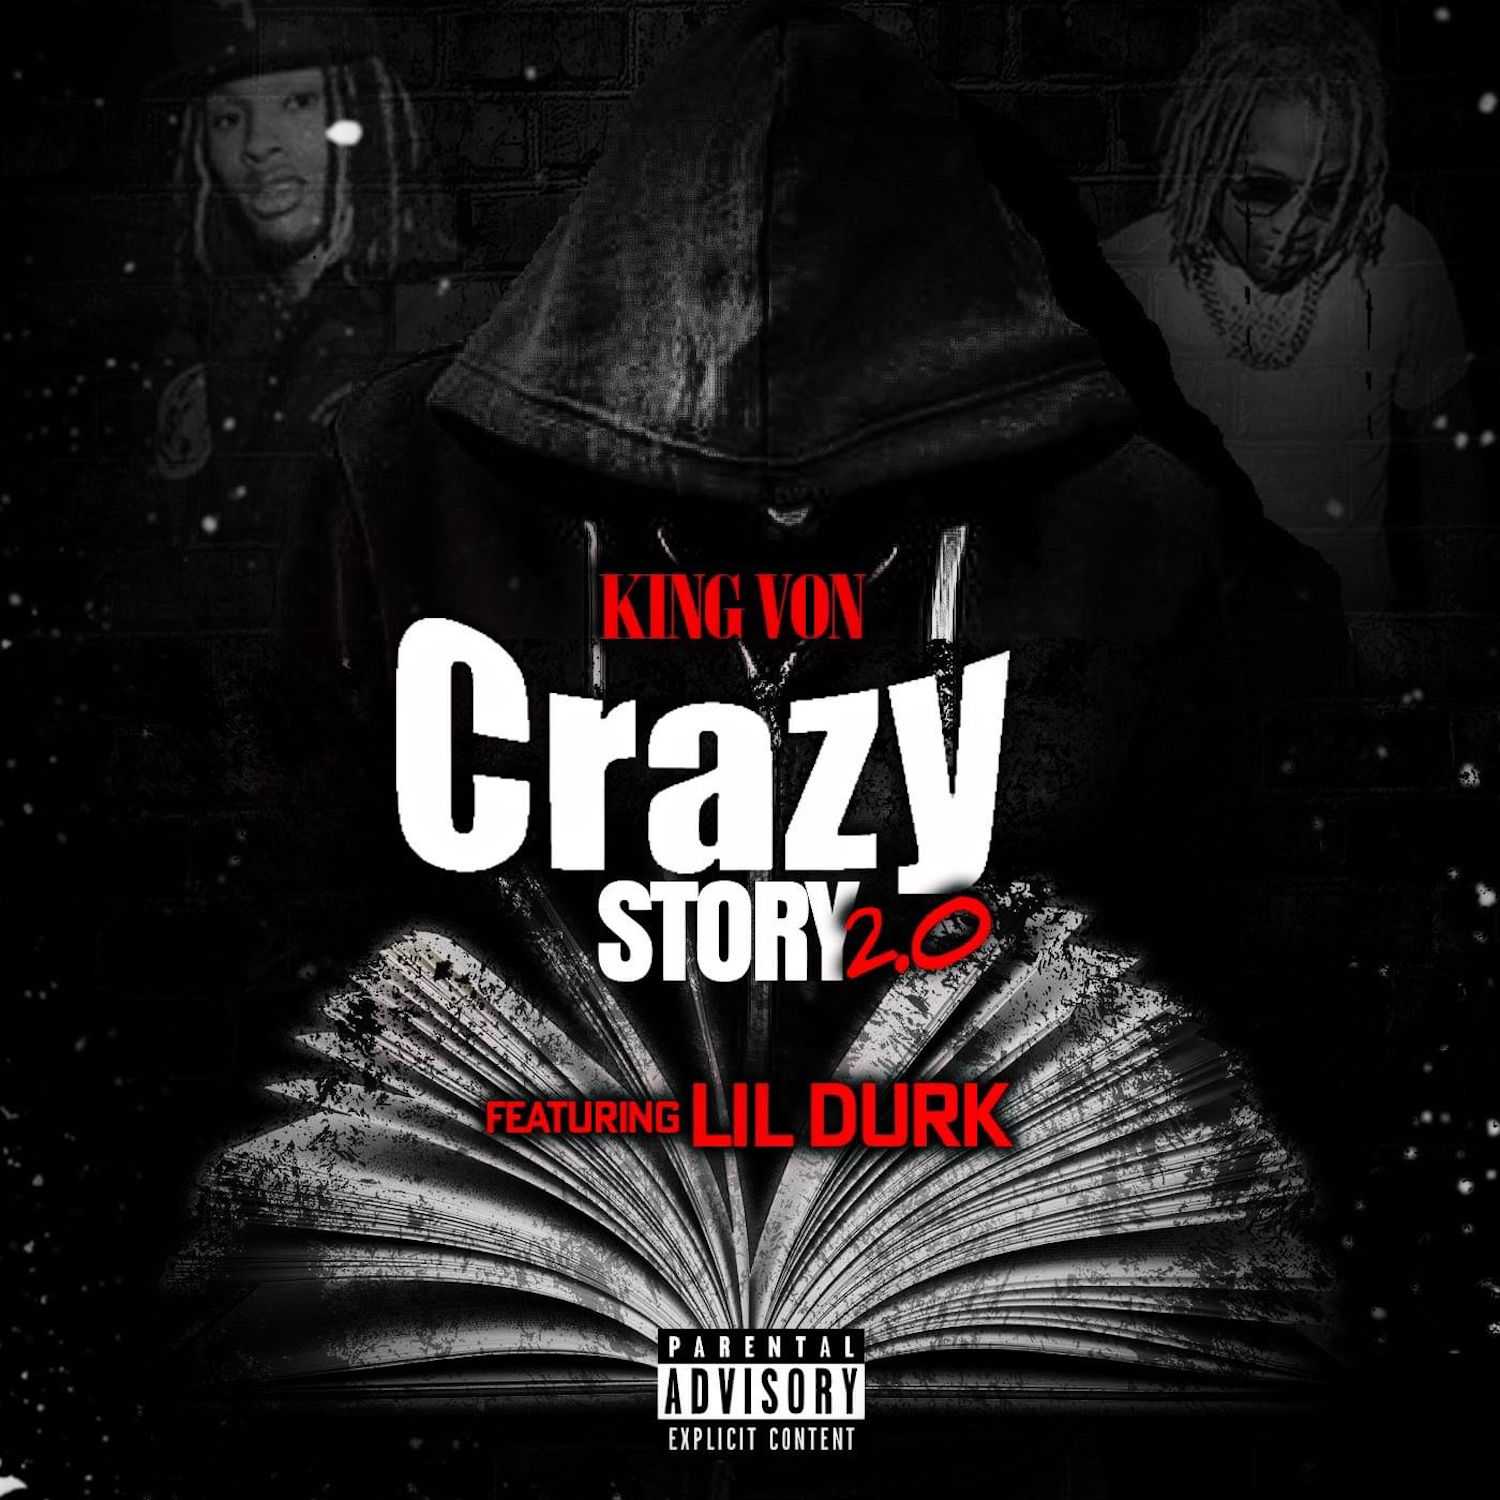 King Von Ft. Lil Durk - Crazy Story 2.0